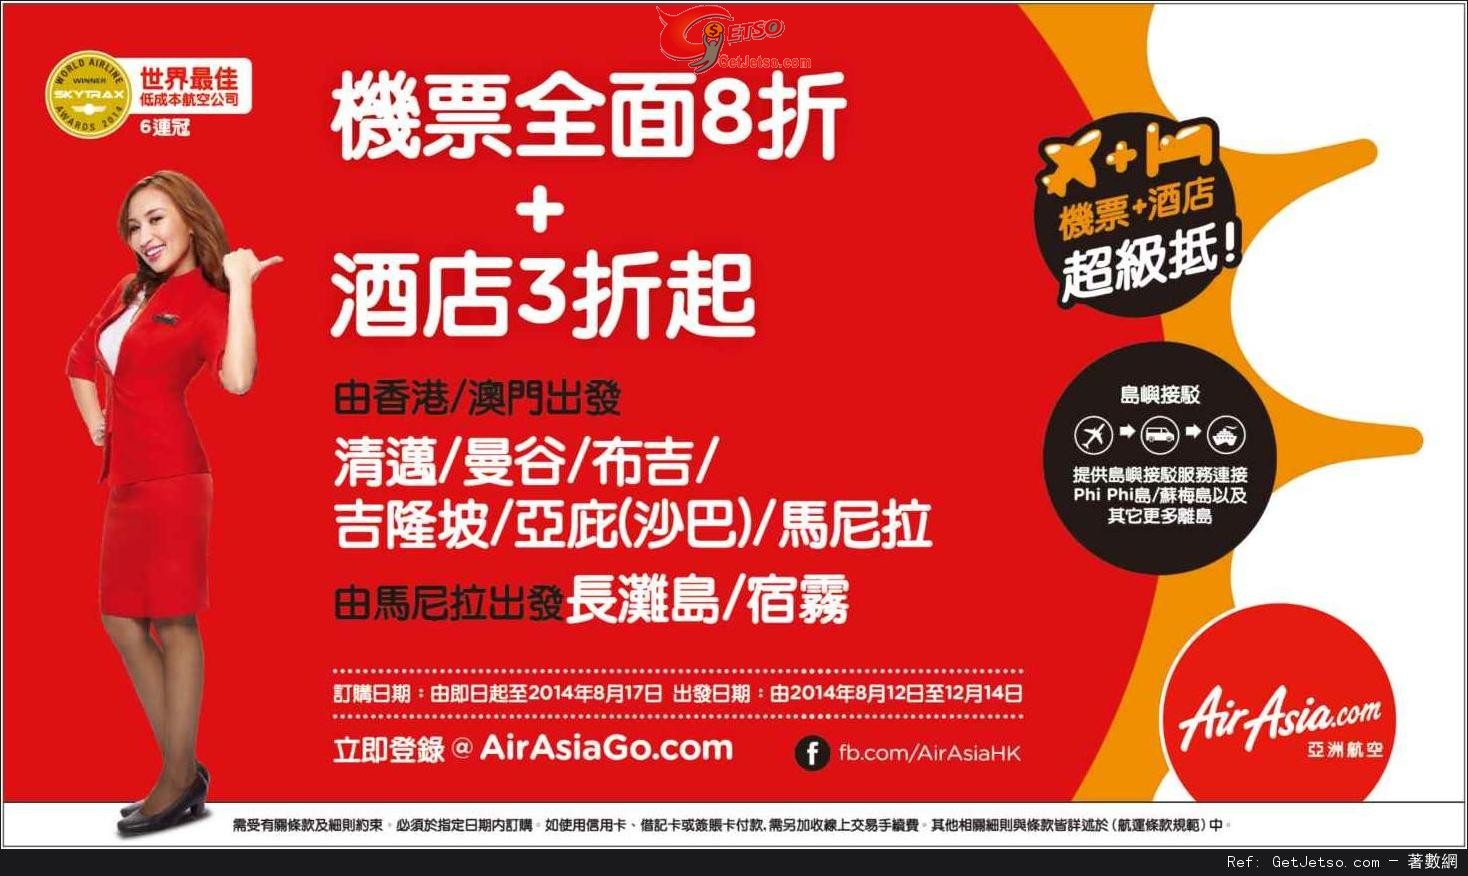 AirAsia 亞洲航空全線機票8折優惠(至14年8月17日)圖片1